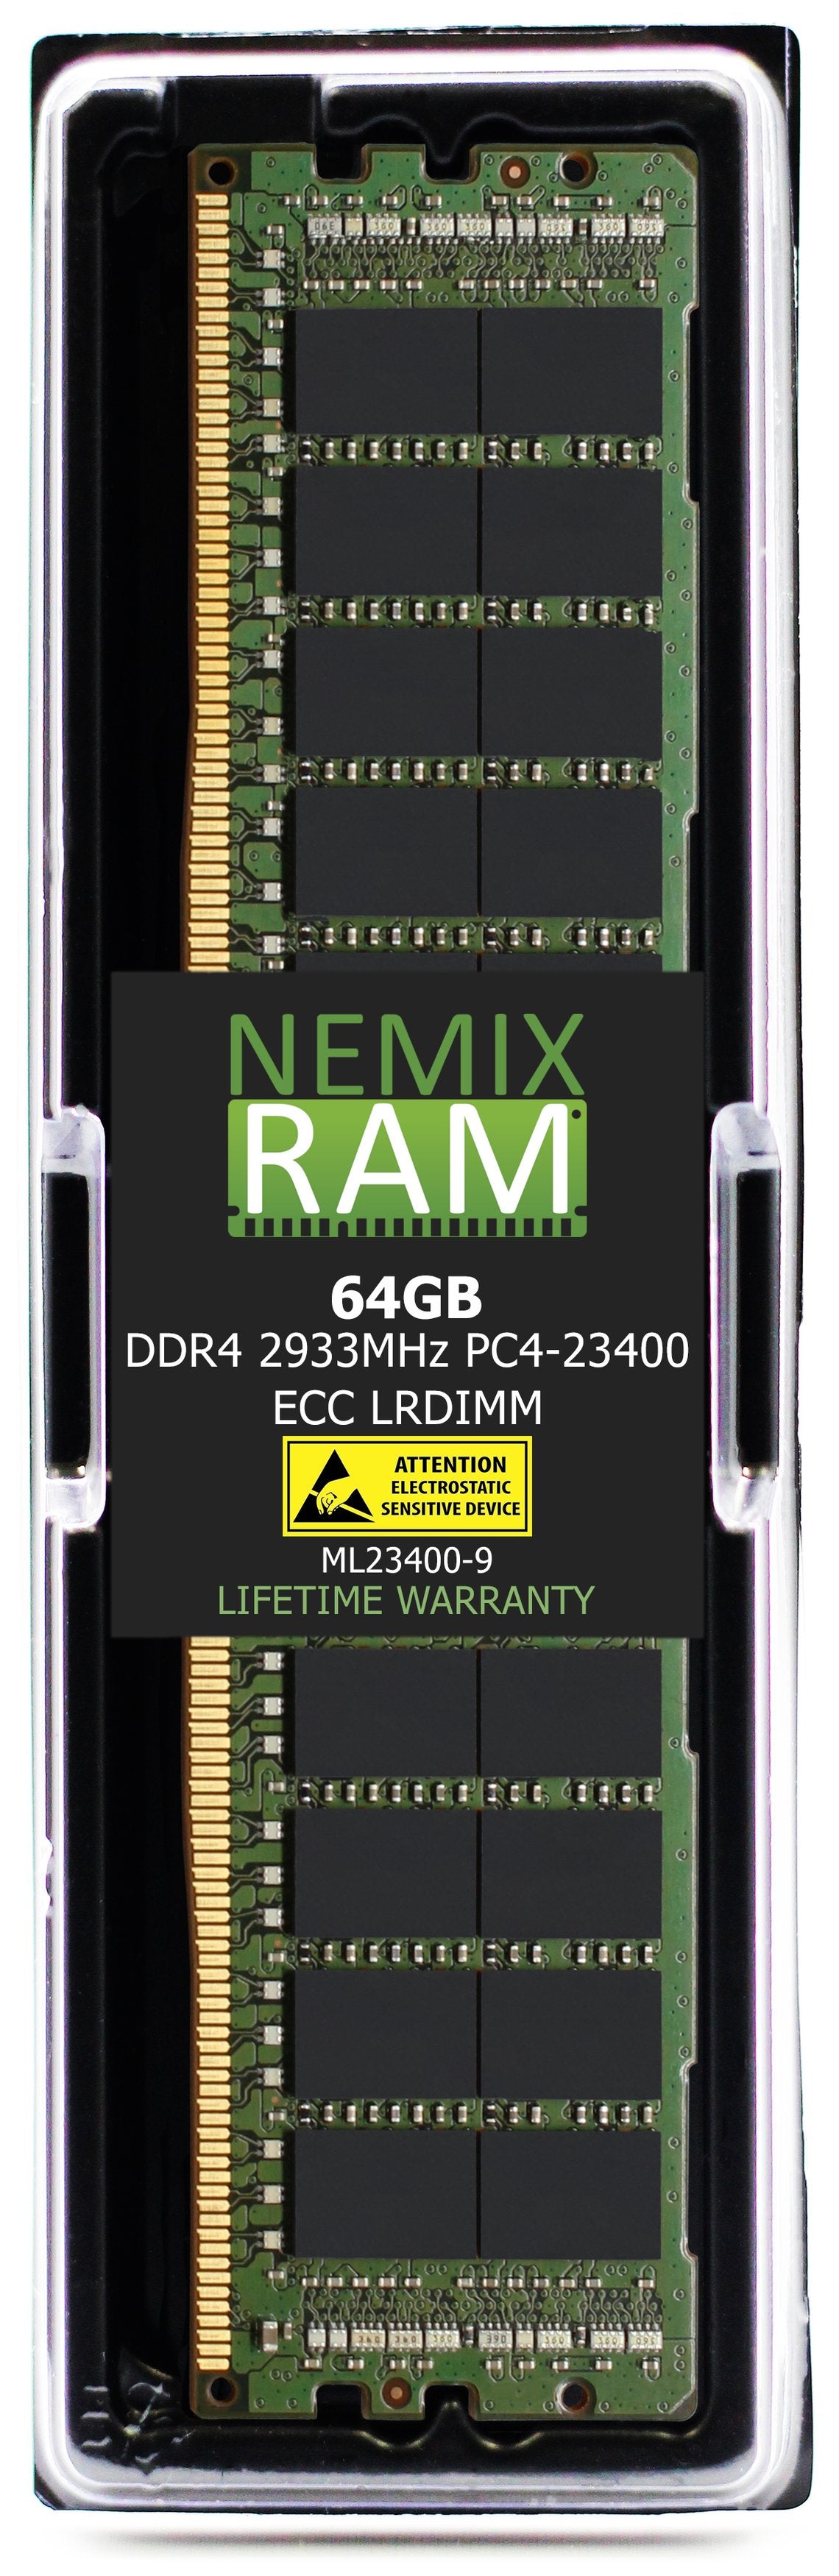 64GB DDR4 2933MHZ PC4-23400 LRDIMM Compatible with Supermicro MEM-DR464LE-LR29